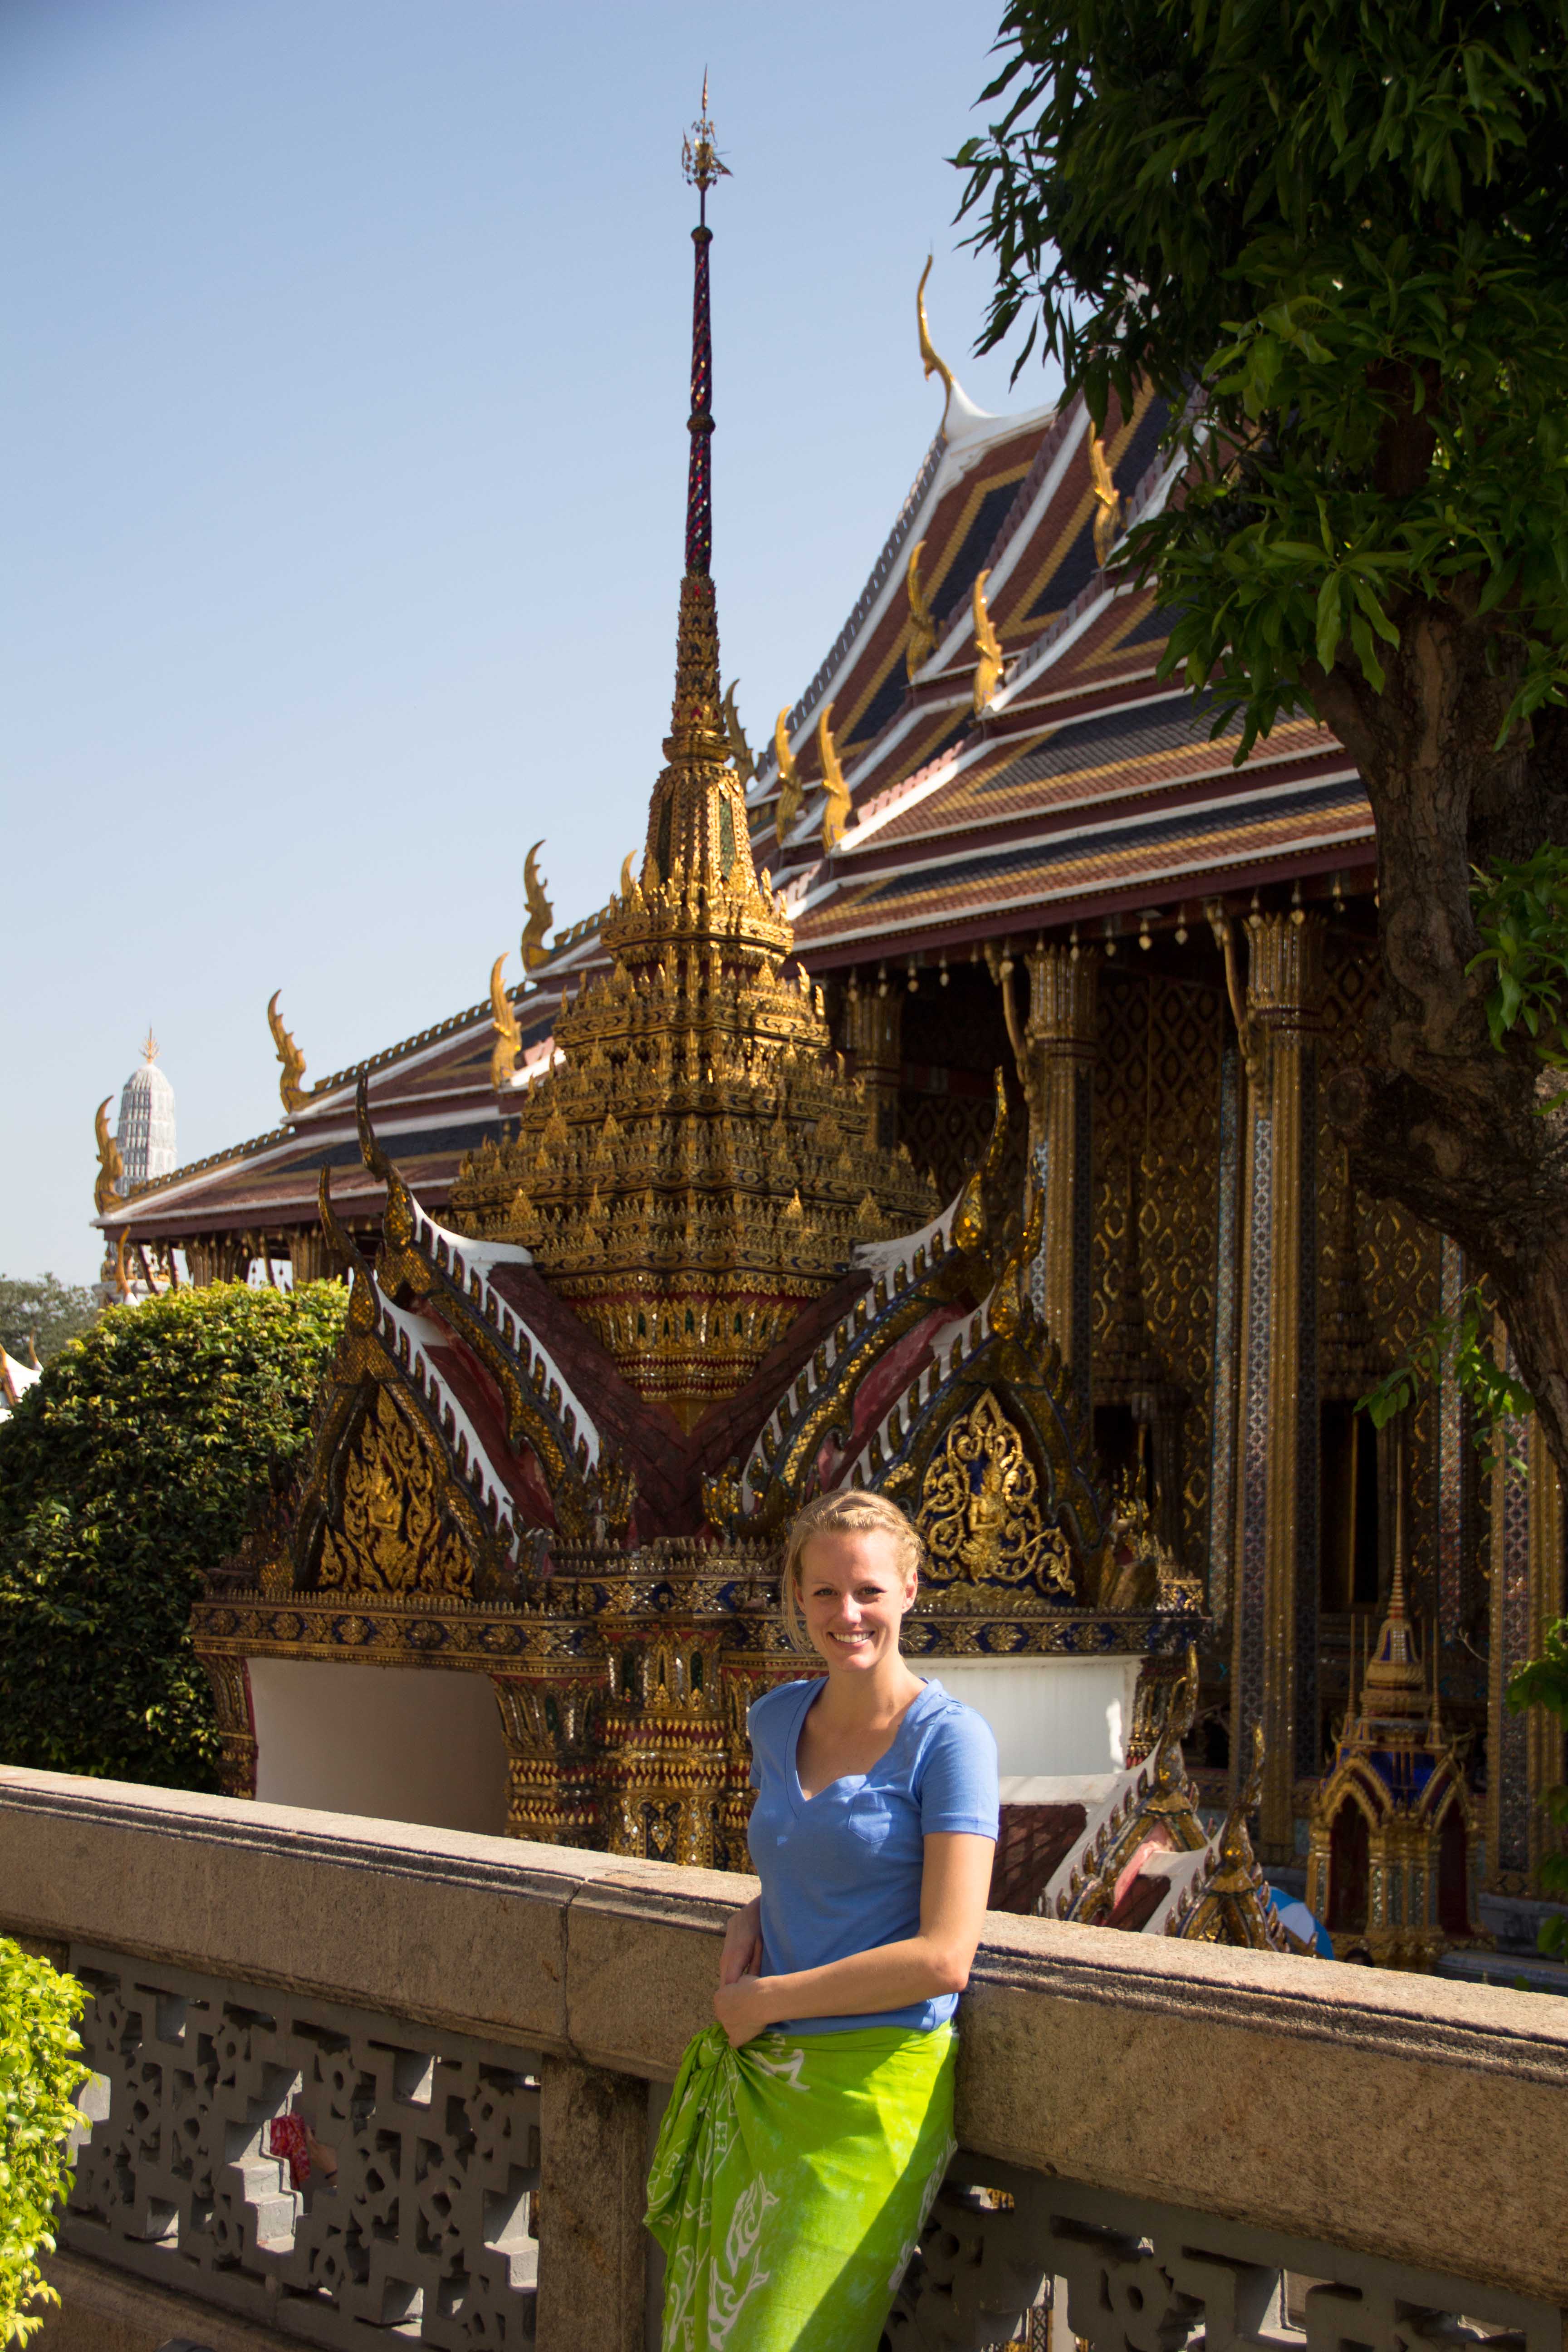 Grand Palace Bangkok | Walking Through Wonderland